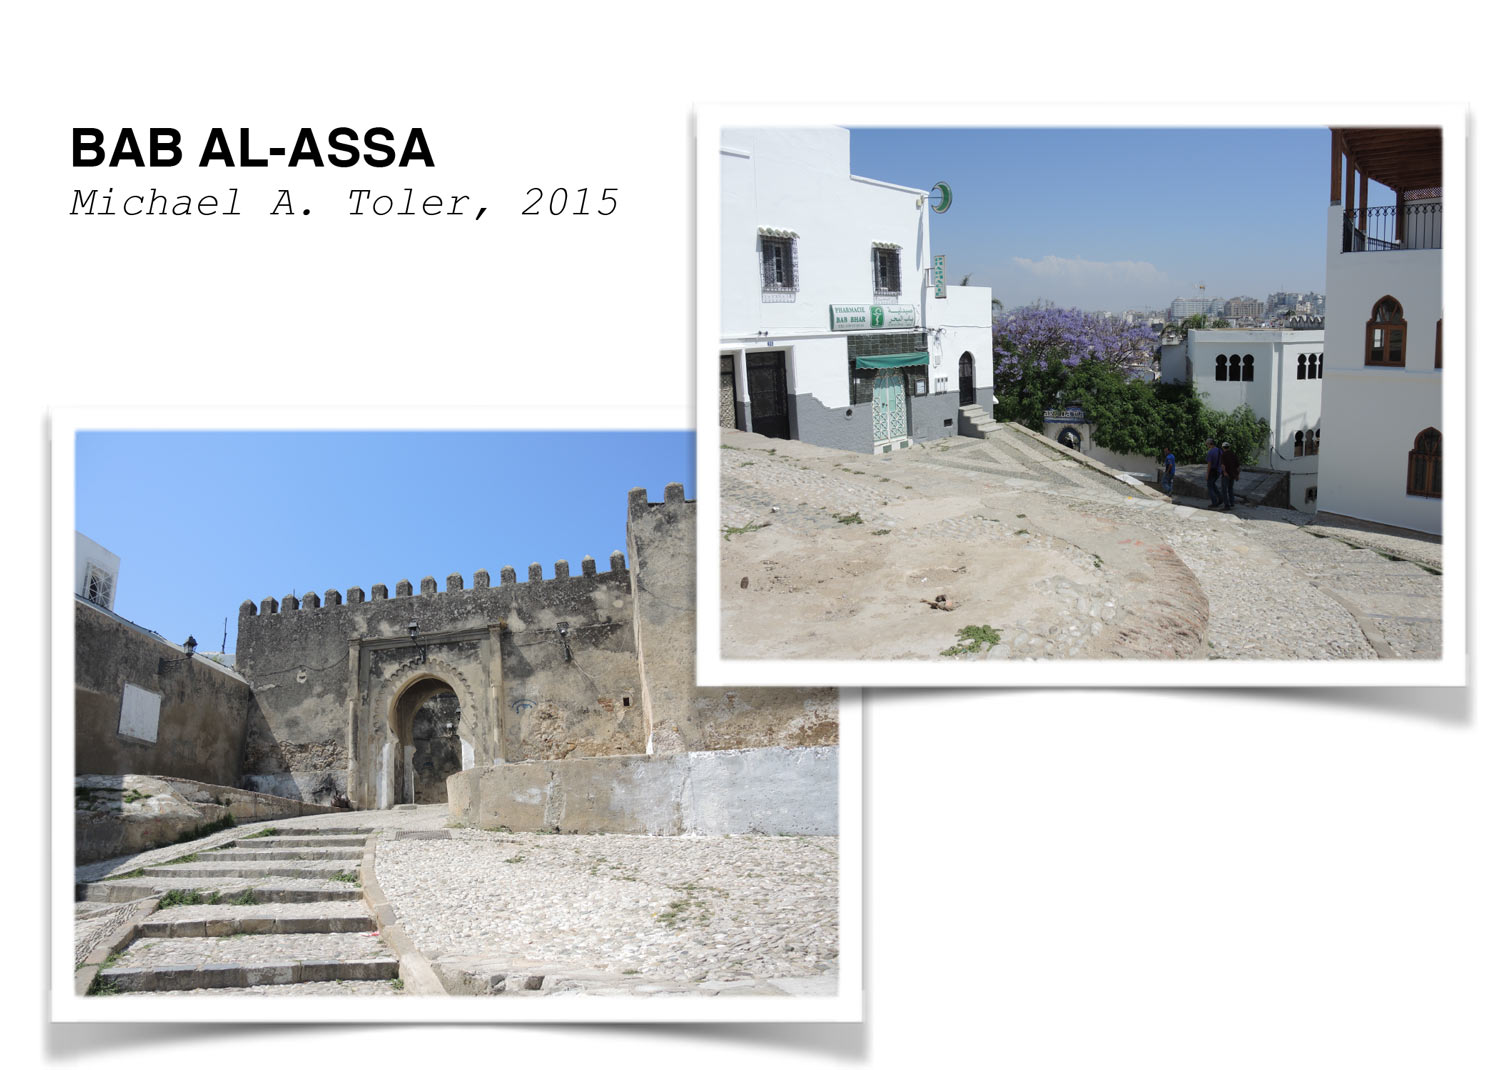 Bab al-Assa - Label for Bab al-'Assa